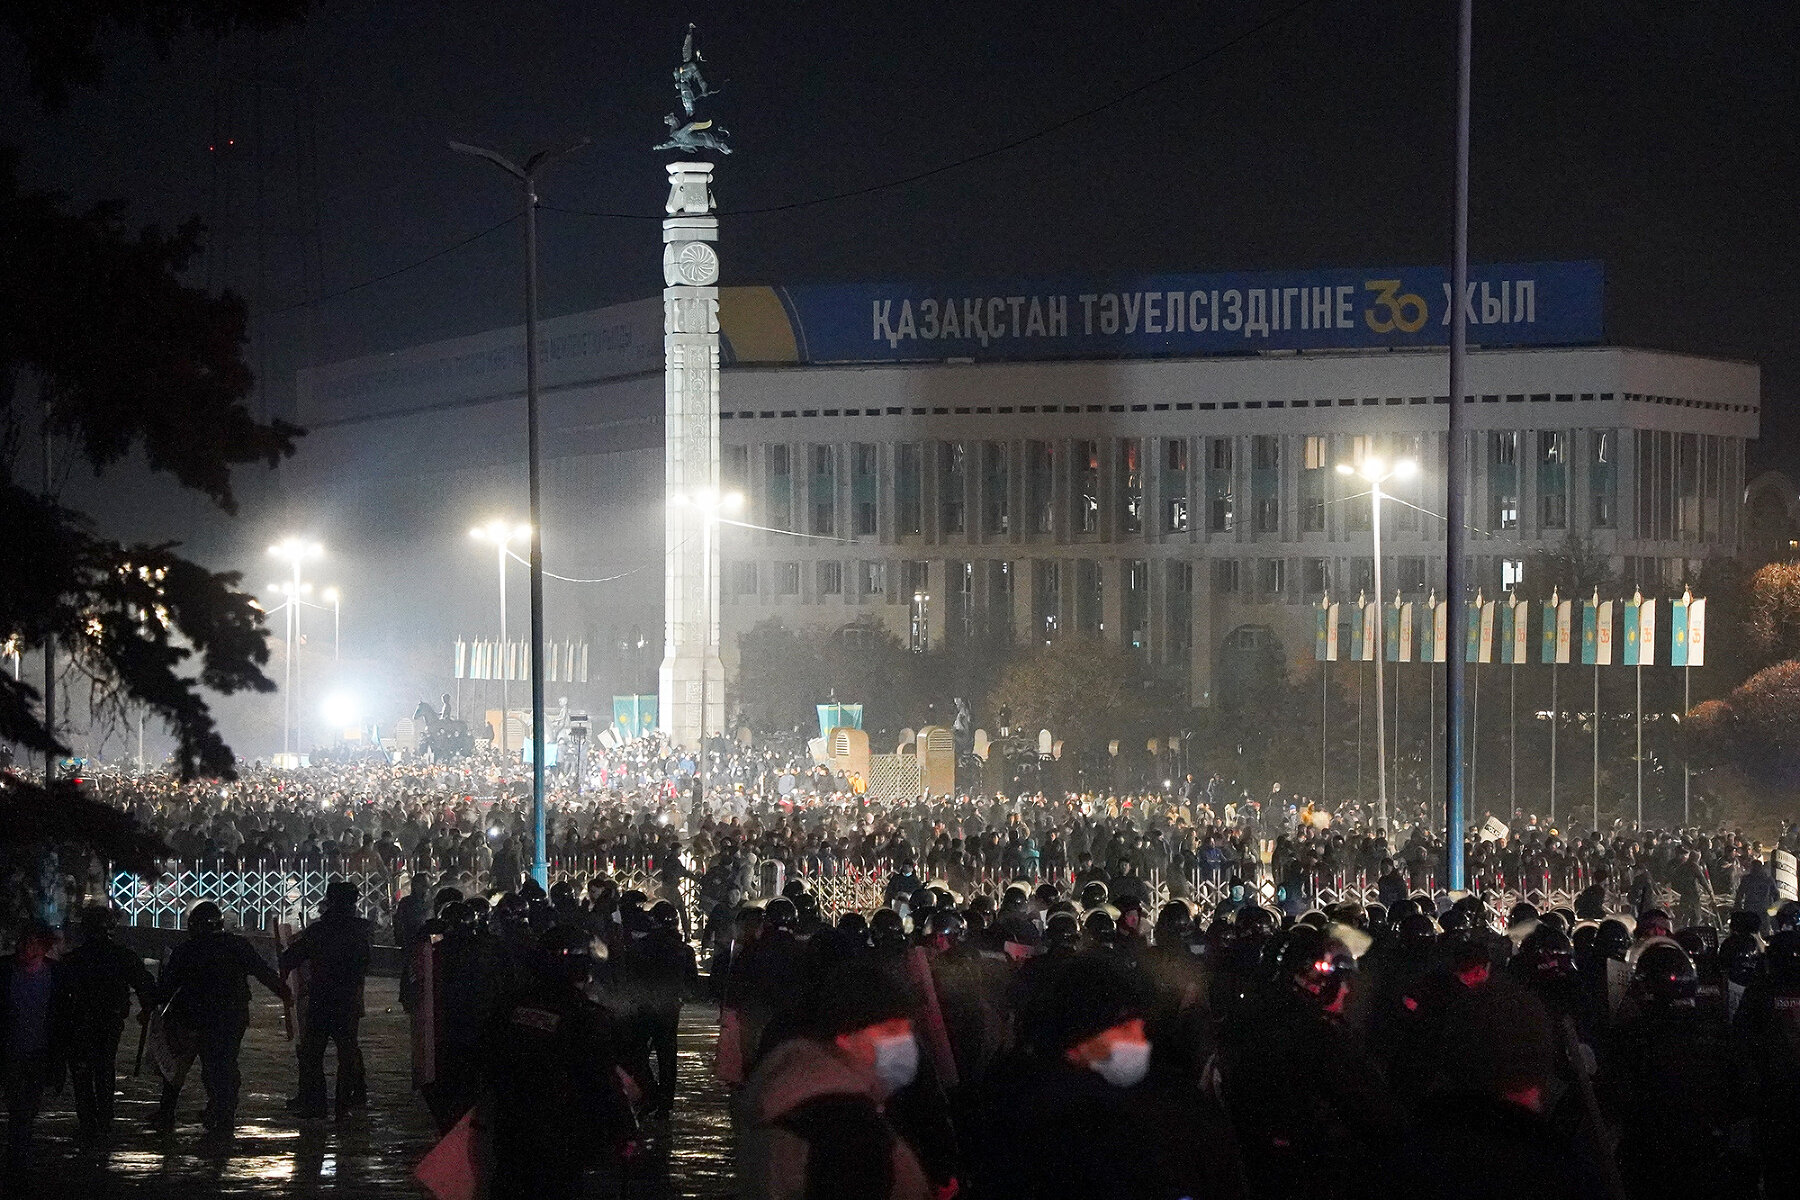 <p>Полиция блокирует центр Алматы в ночь на 5 января 2022 года.</p>

<p>В Алматы прошли одни из самых масштабных протестов и столкновений с силовиками&nbsp;&mdash; они начались в ночь с 4 на 5 января. Протестующие захватили резиденцию президента Казахстана и городской аэропорт. На улицах также жгли полицейские машины.&nbsp;СМИ <a href="https://meduza.io/live/2022/01/05/protesty-v-kazahstane-demonstranty-zahvatili-zdanie-administratsii-almaty-onlayn" target="_blank">сообщали</a> о случаях грабежа магазинов. В эту же ночь власти <a href="https://tvrain.ru/news/v_kazahstane_otkljuchili_internet-545253/" target="_blank">отключили</a> интернет по всей стране.</p>